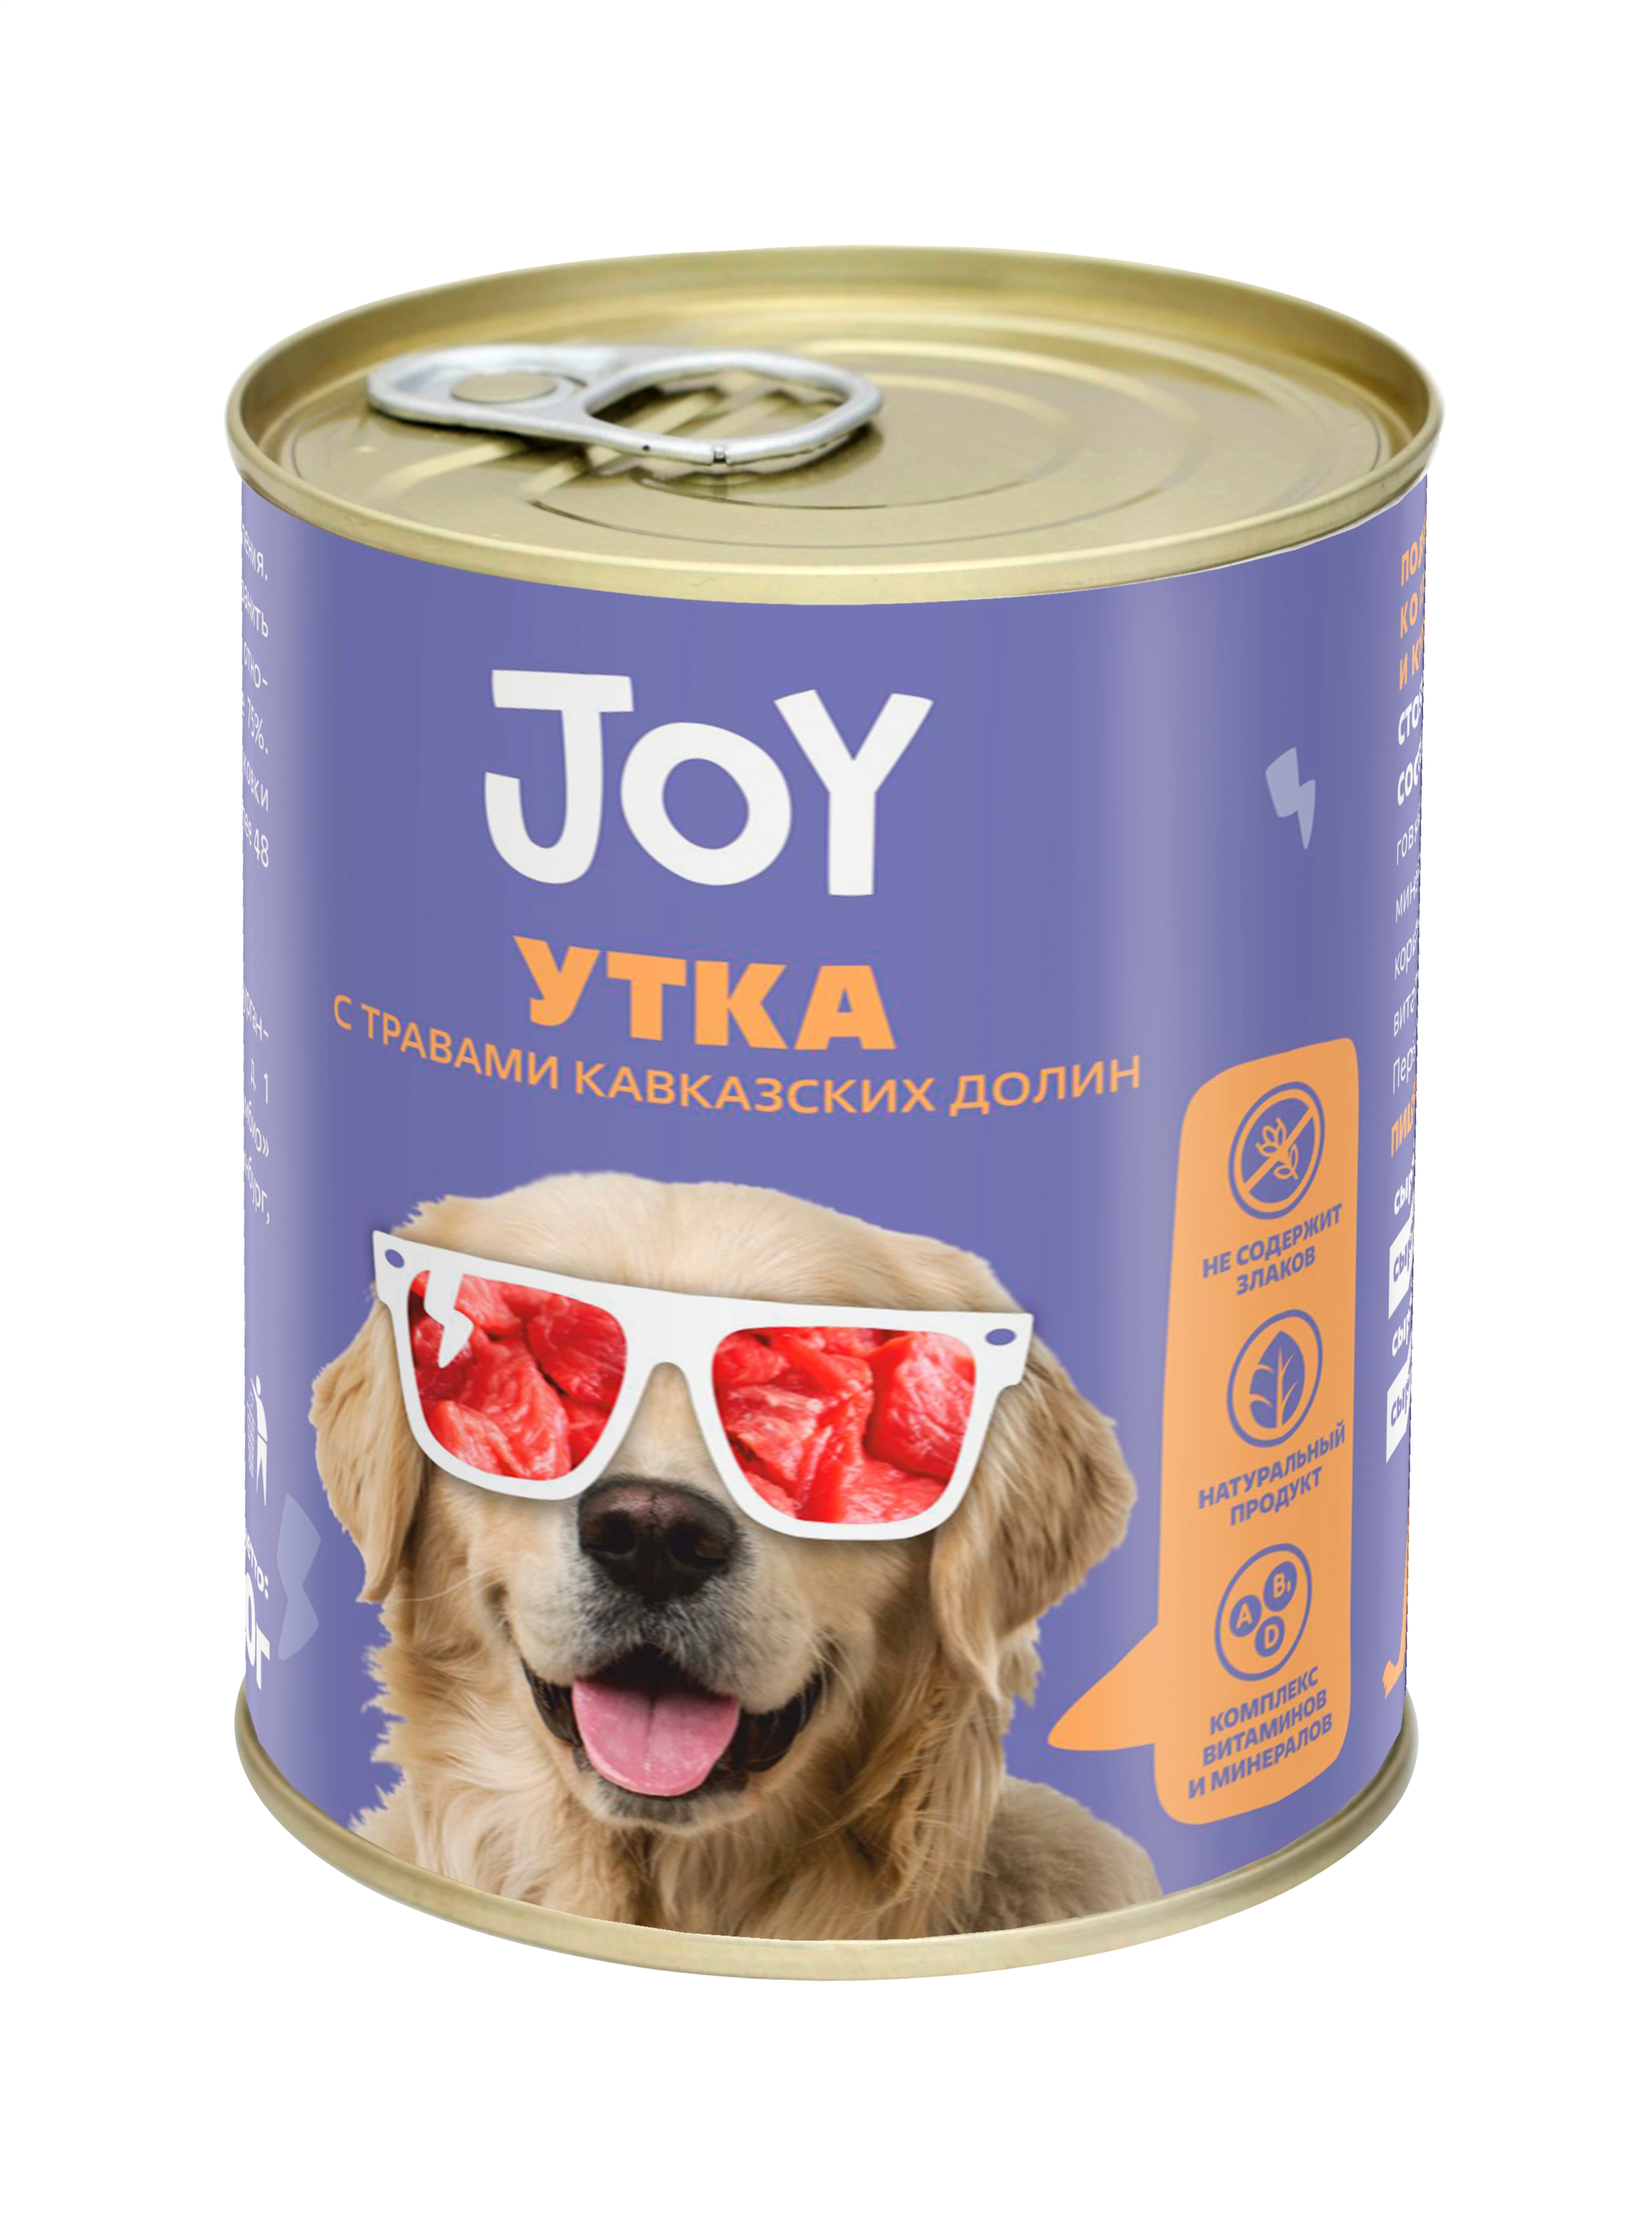 Консервы для собак Joy Утка с травами, беззерновые, 340 г